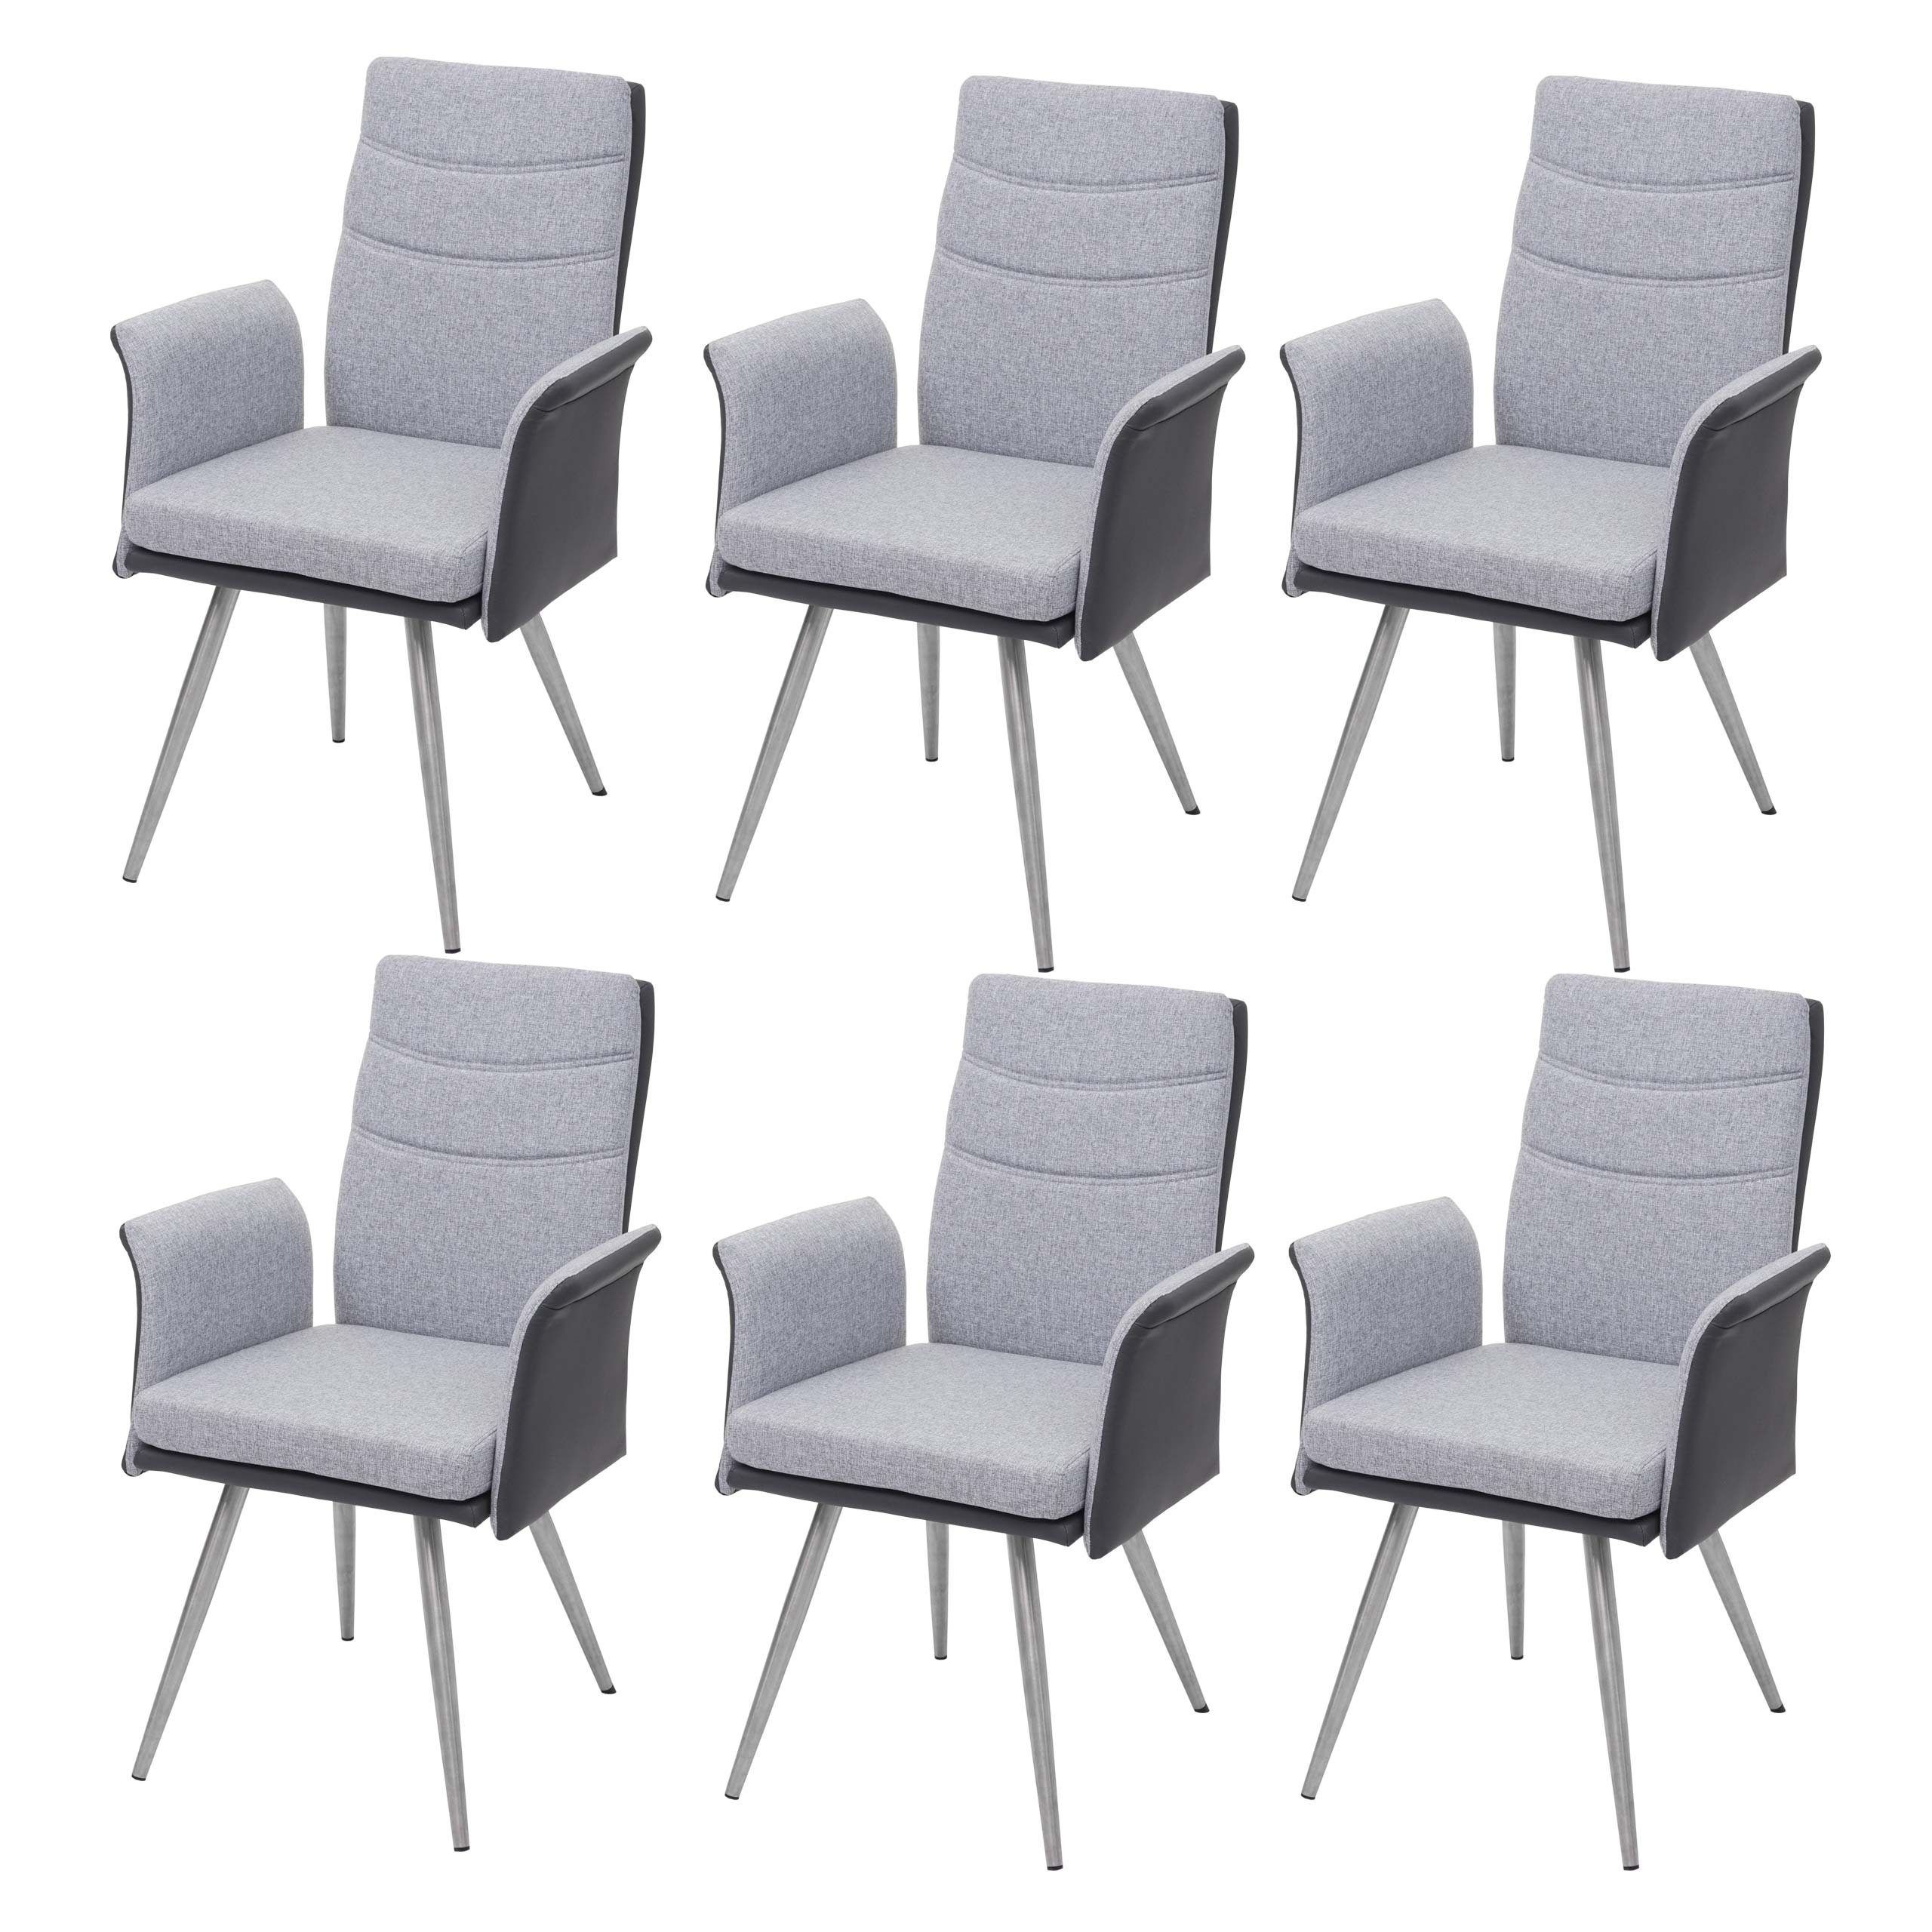 MCW Esszimmerstuhl MCW-G54-6 (Stühle mit Armlehne, 6 St), 6er-Set, Inklusive Fußbodenschoner, dekorative glänzende Ziernaht